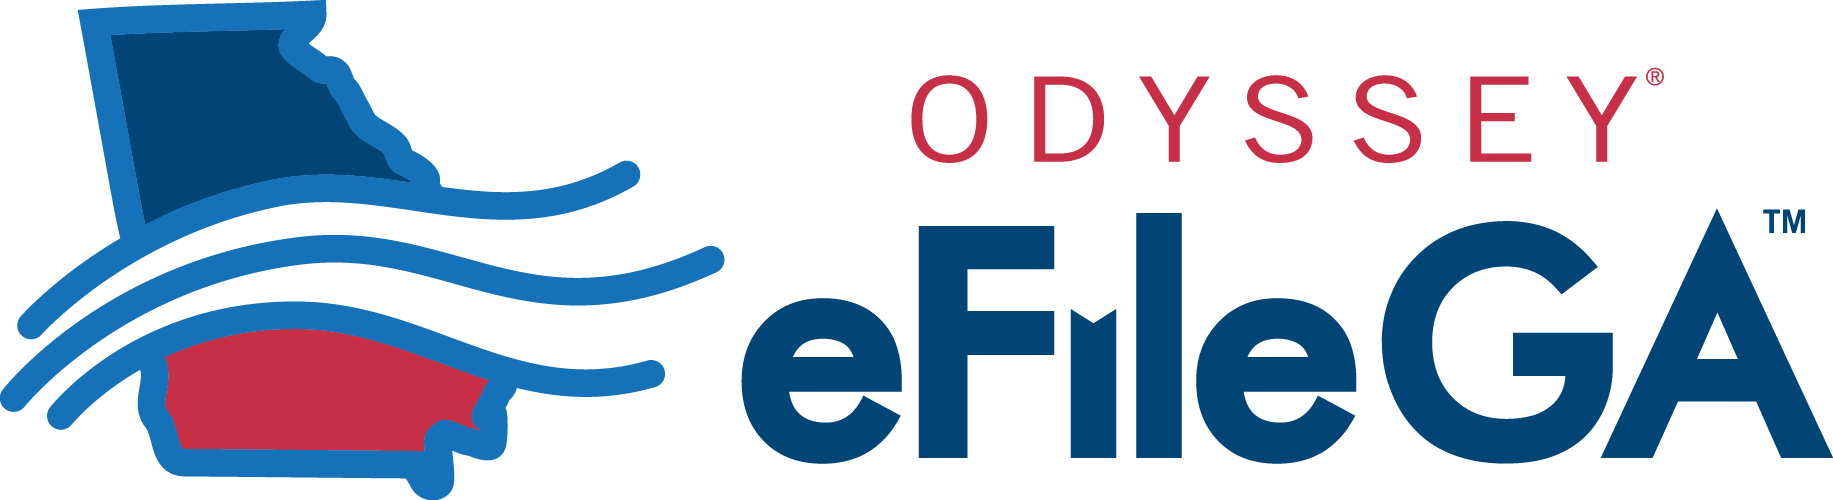 Odyssey eFileGA Logo RGB HORZ.png